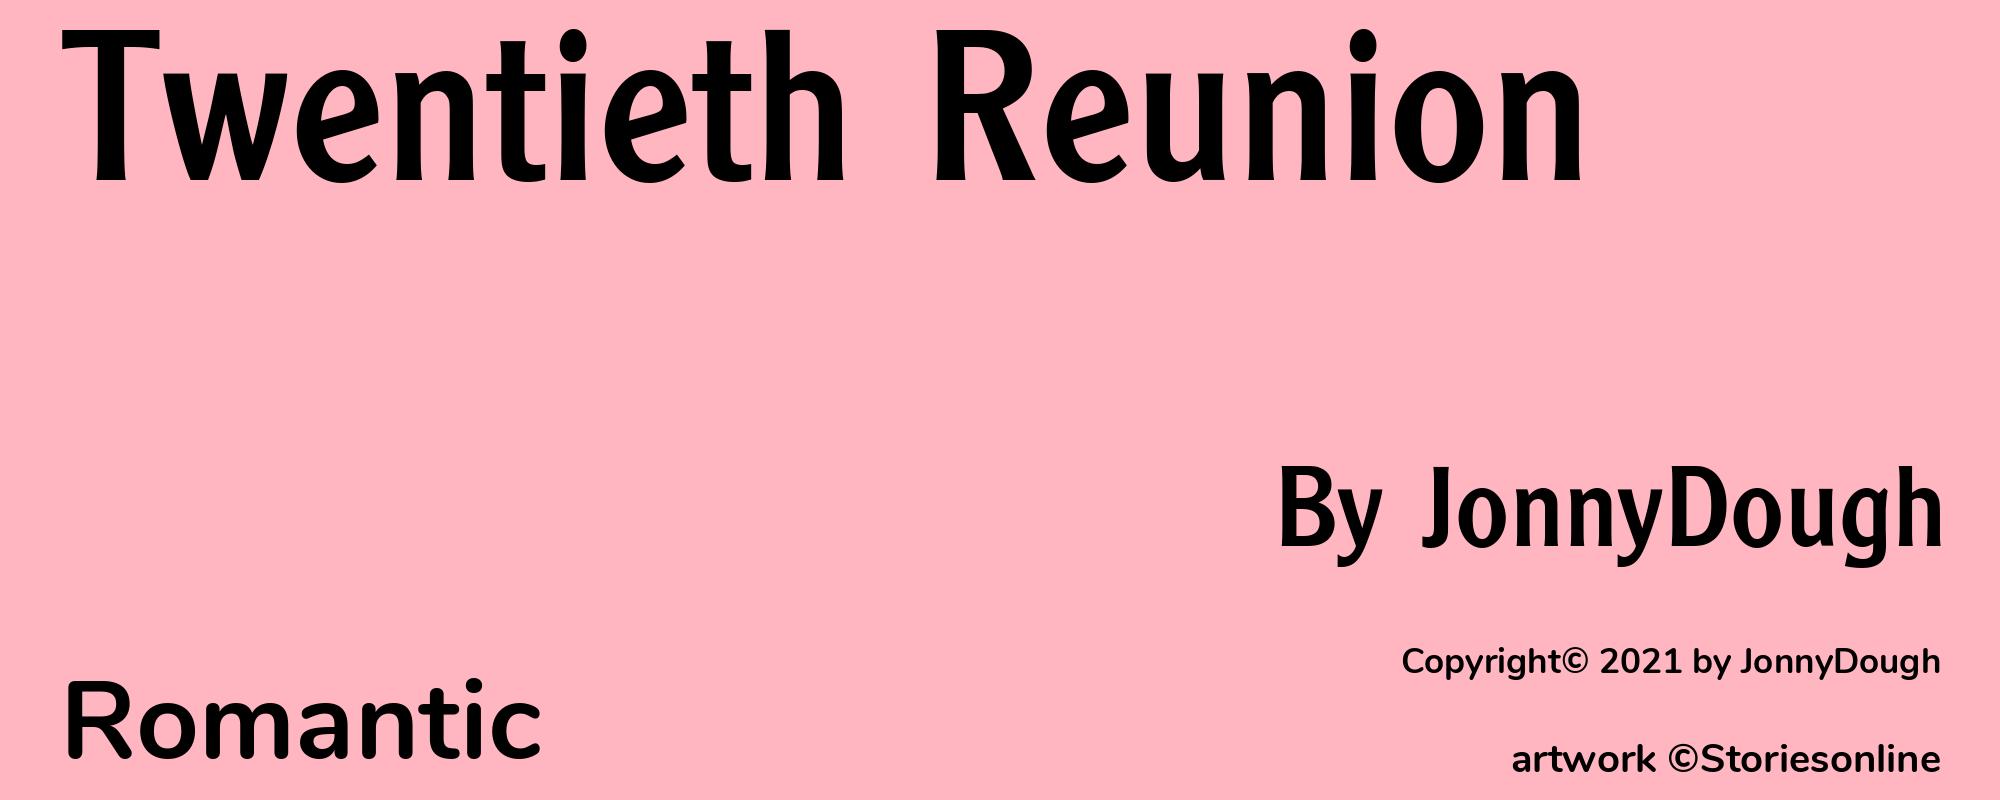 Twentieth Reunion - Cover